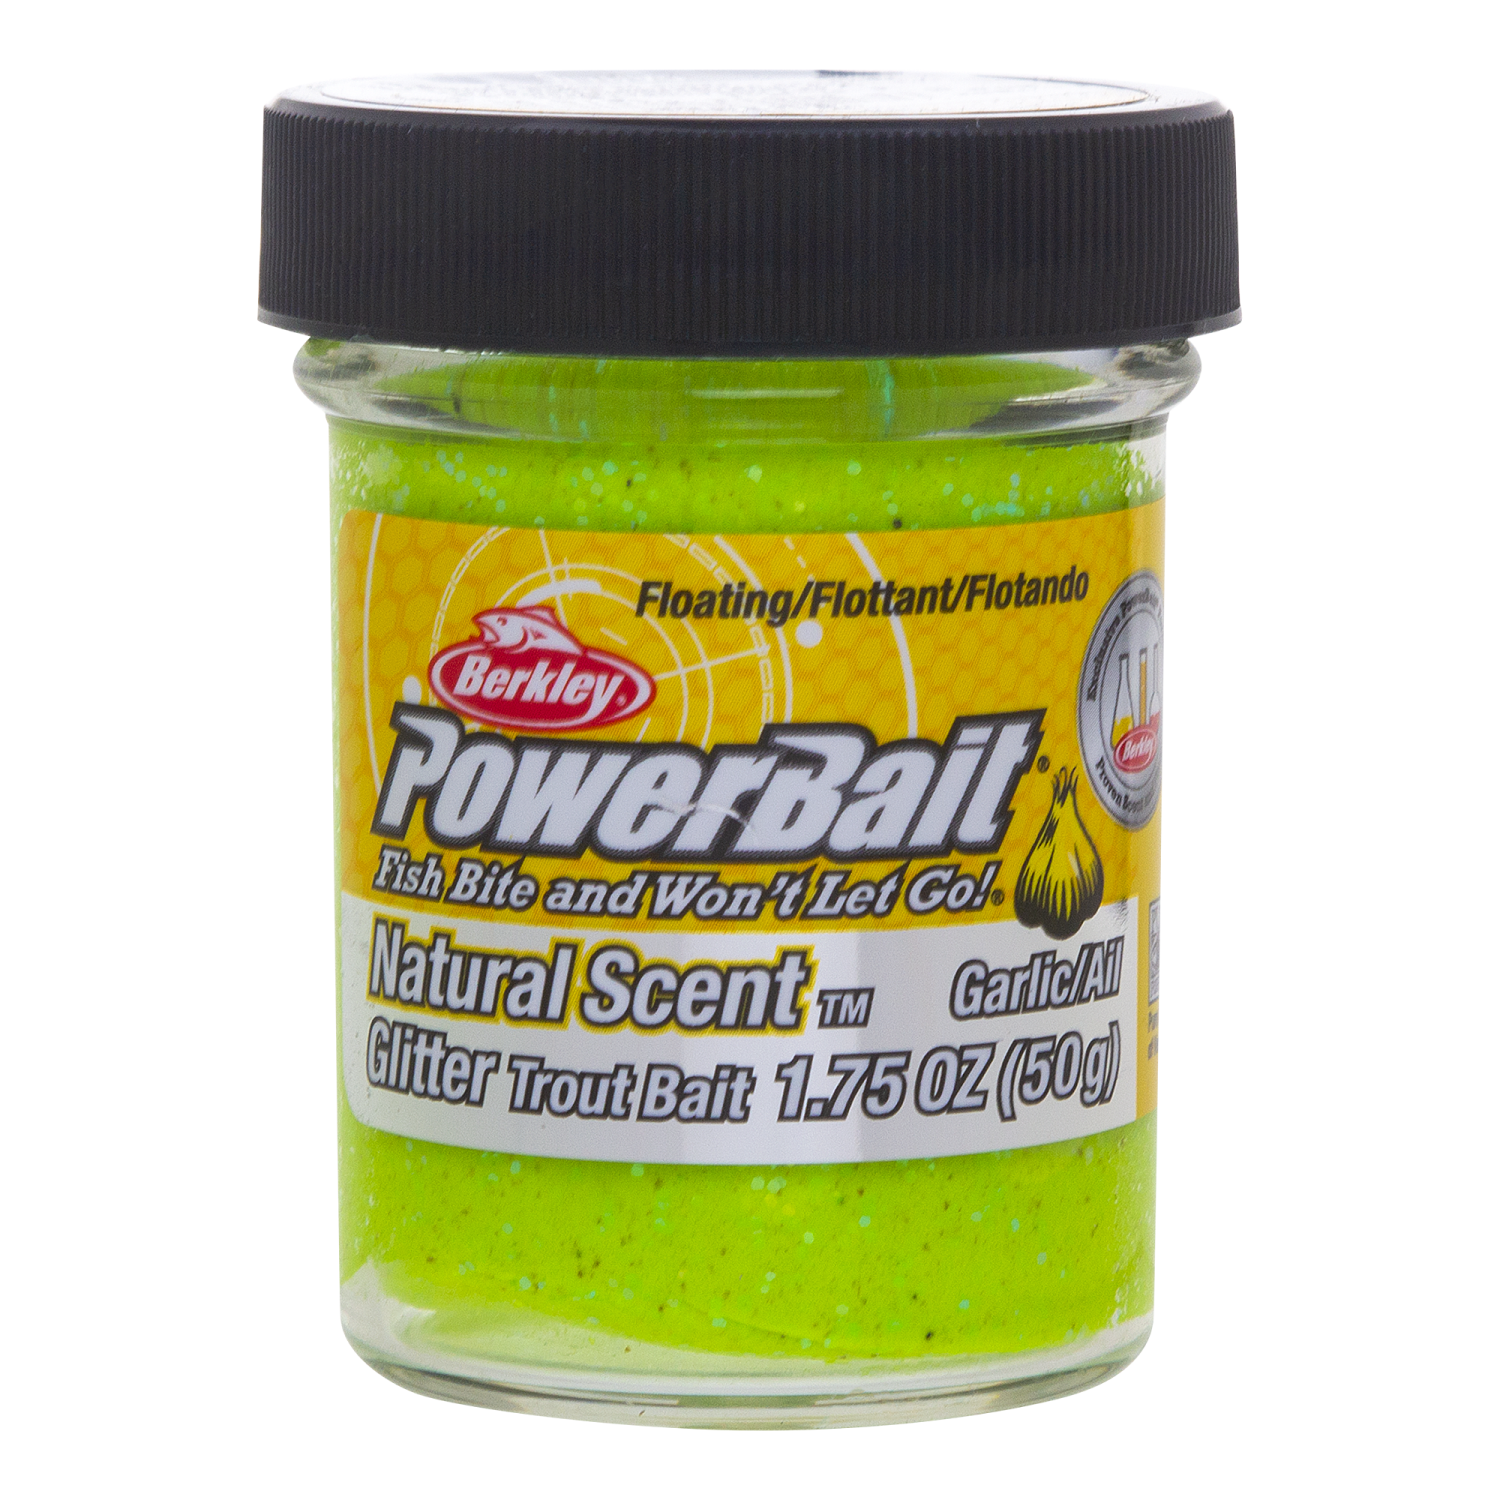 Паста форелевая Berkley Powerbait Natural Scent Glitter Trout Bait (50 г)  Garlic Chartreuse купить по цене 610 руб. в интернет-магазине